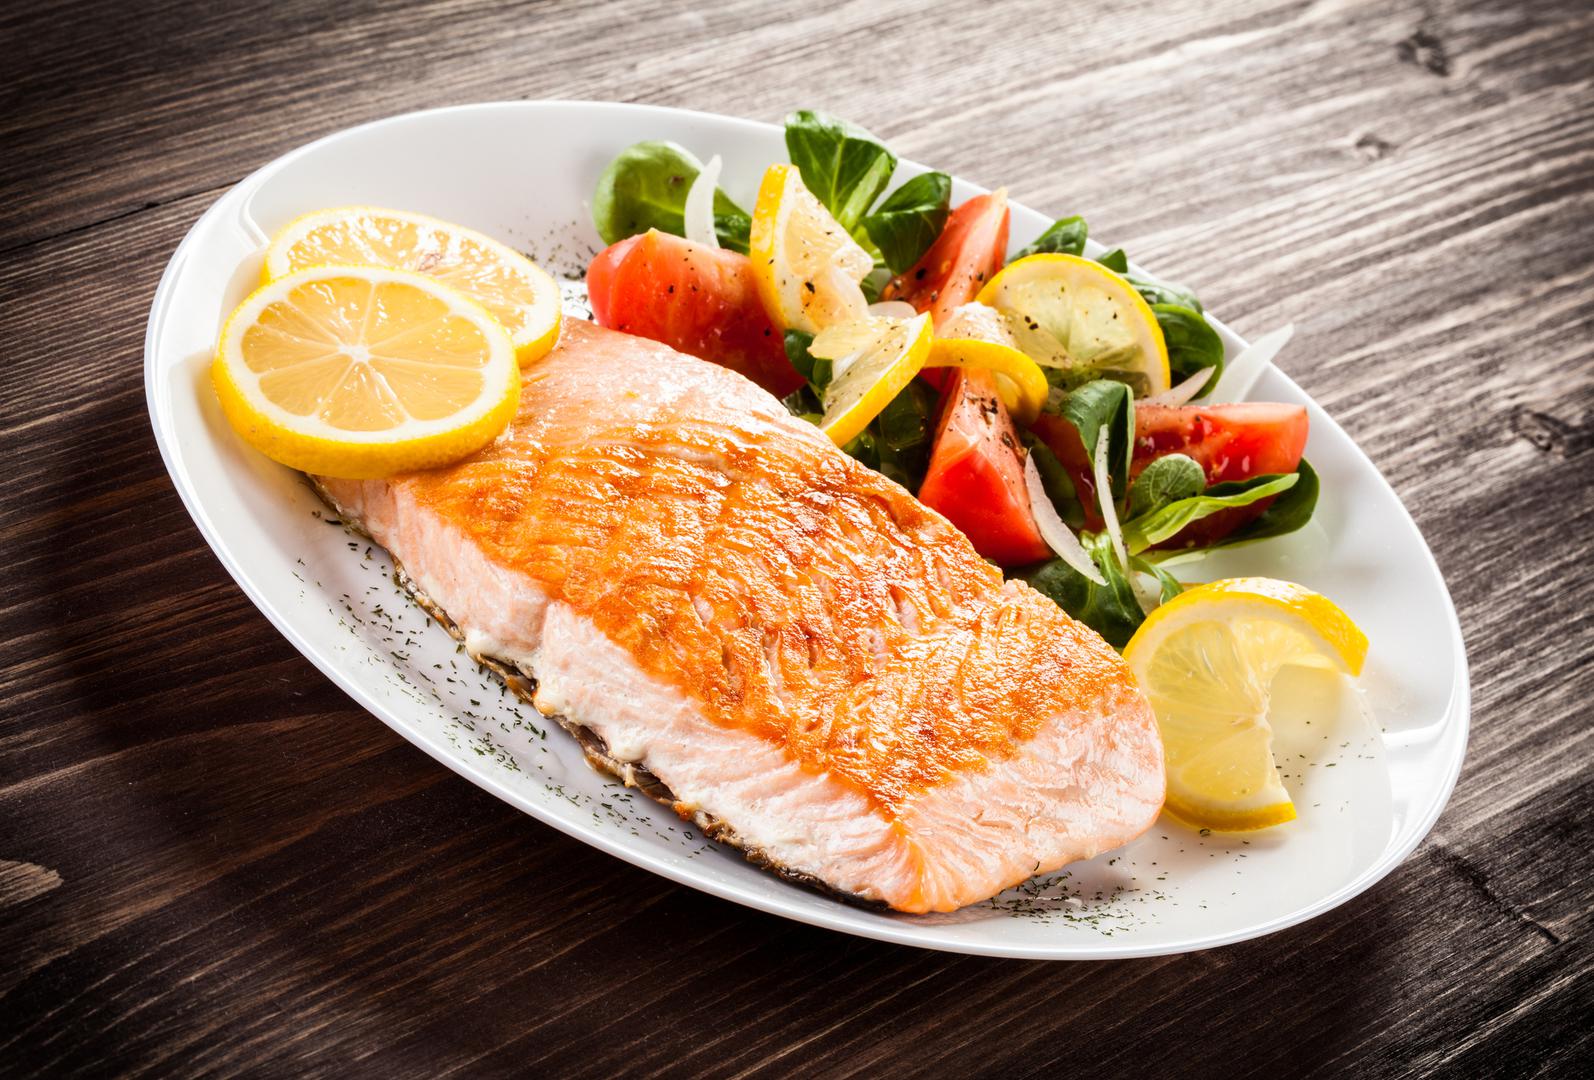 Riba obiluje kalcijem i vitaminom D što pomaže u očuvanju zdravlja kostiju.